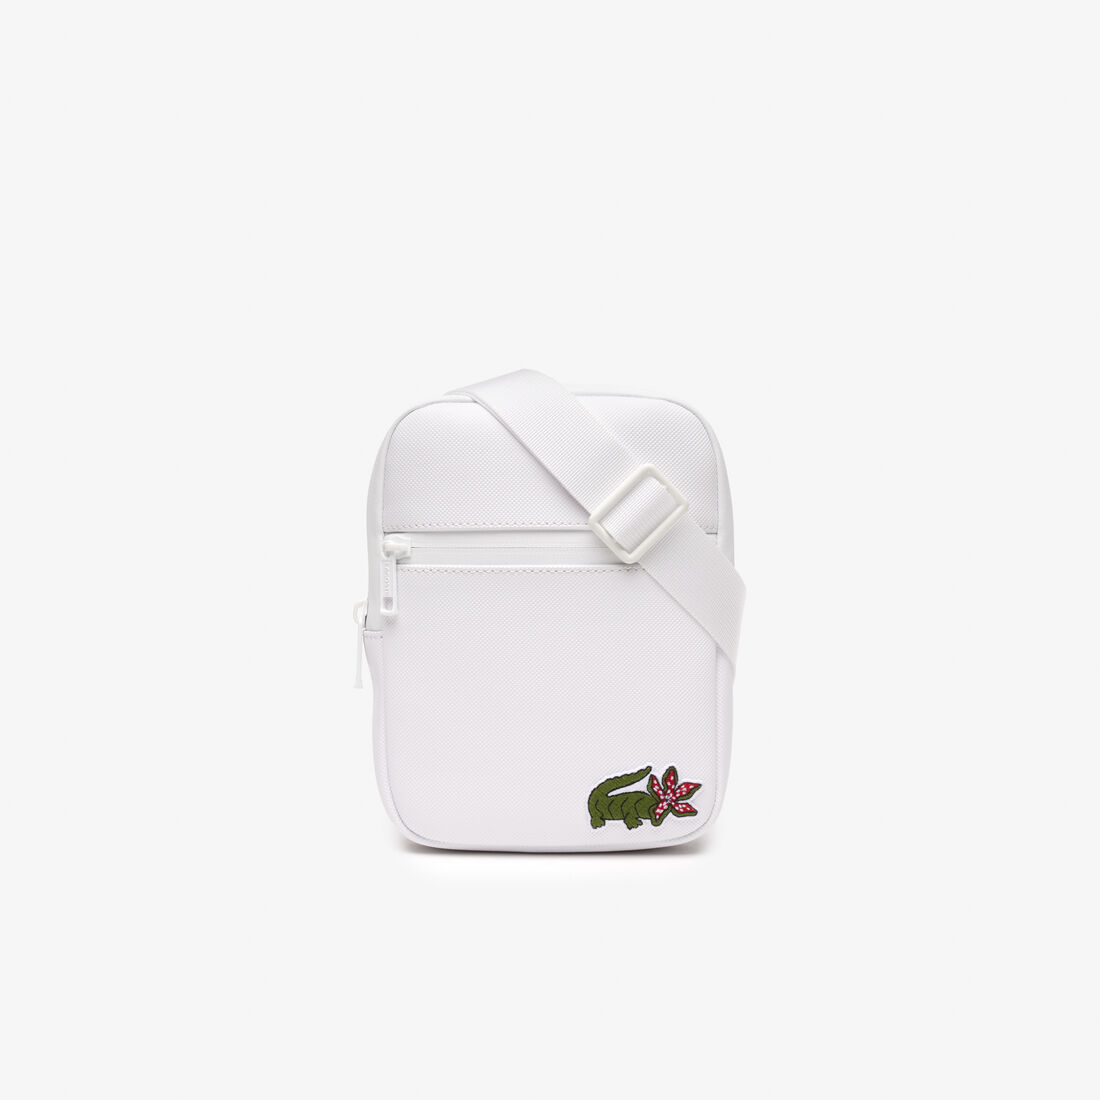 Men’s Lacoste x Netflix Croc Print Shoulder Bag - Small